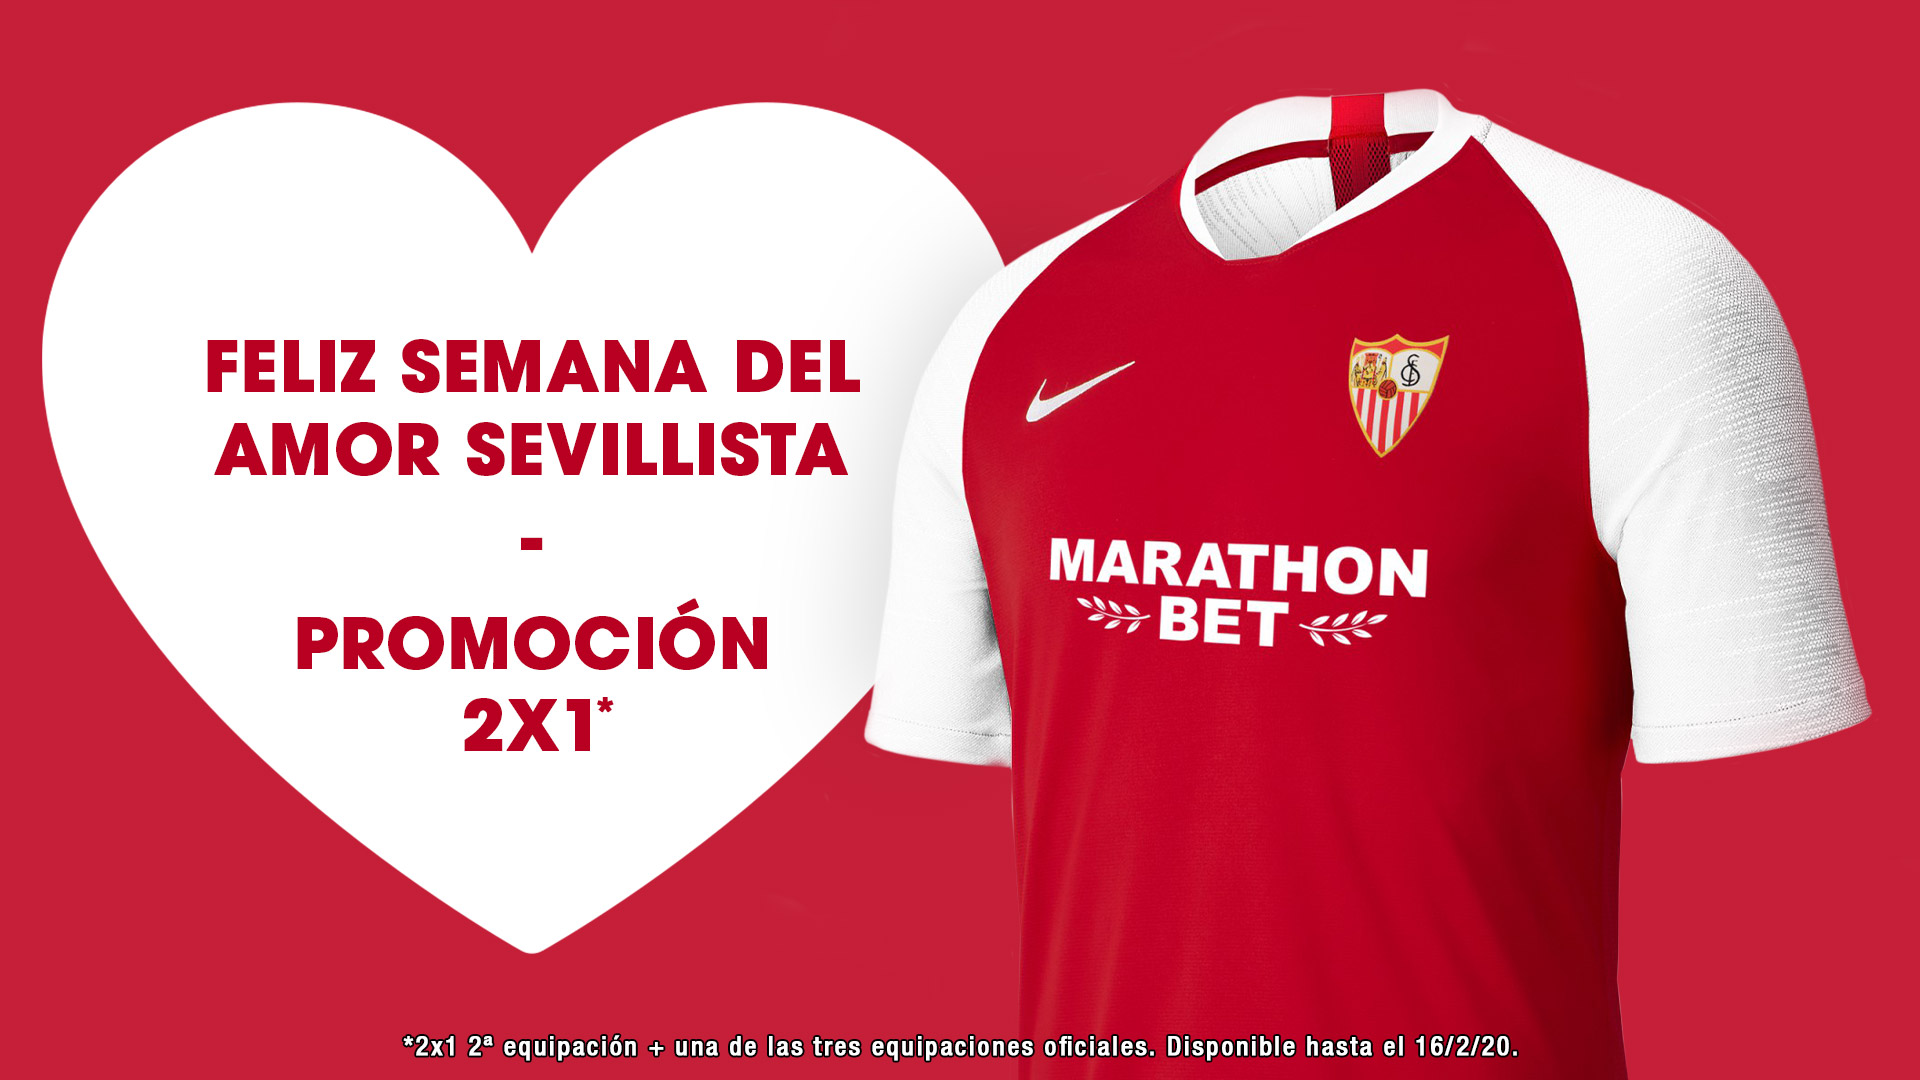 2x1 en camisetas oficiales en la Semana del Amor Sevillista